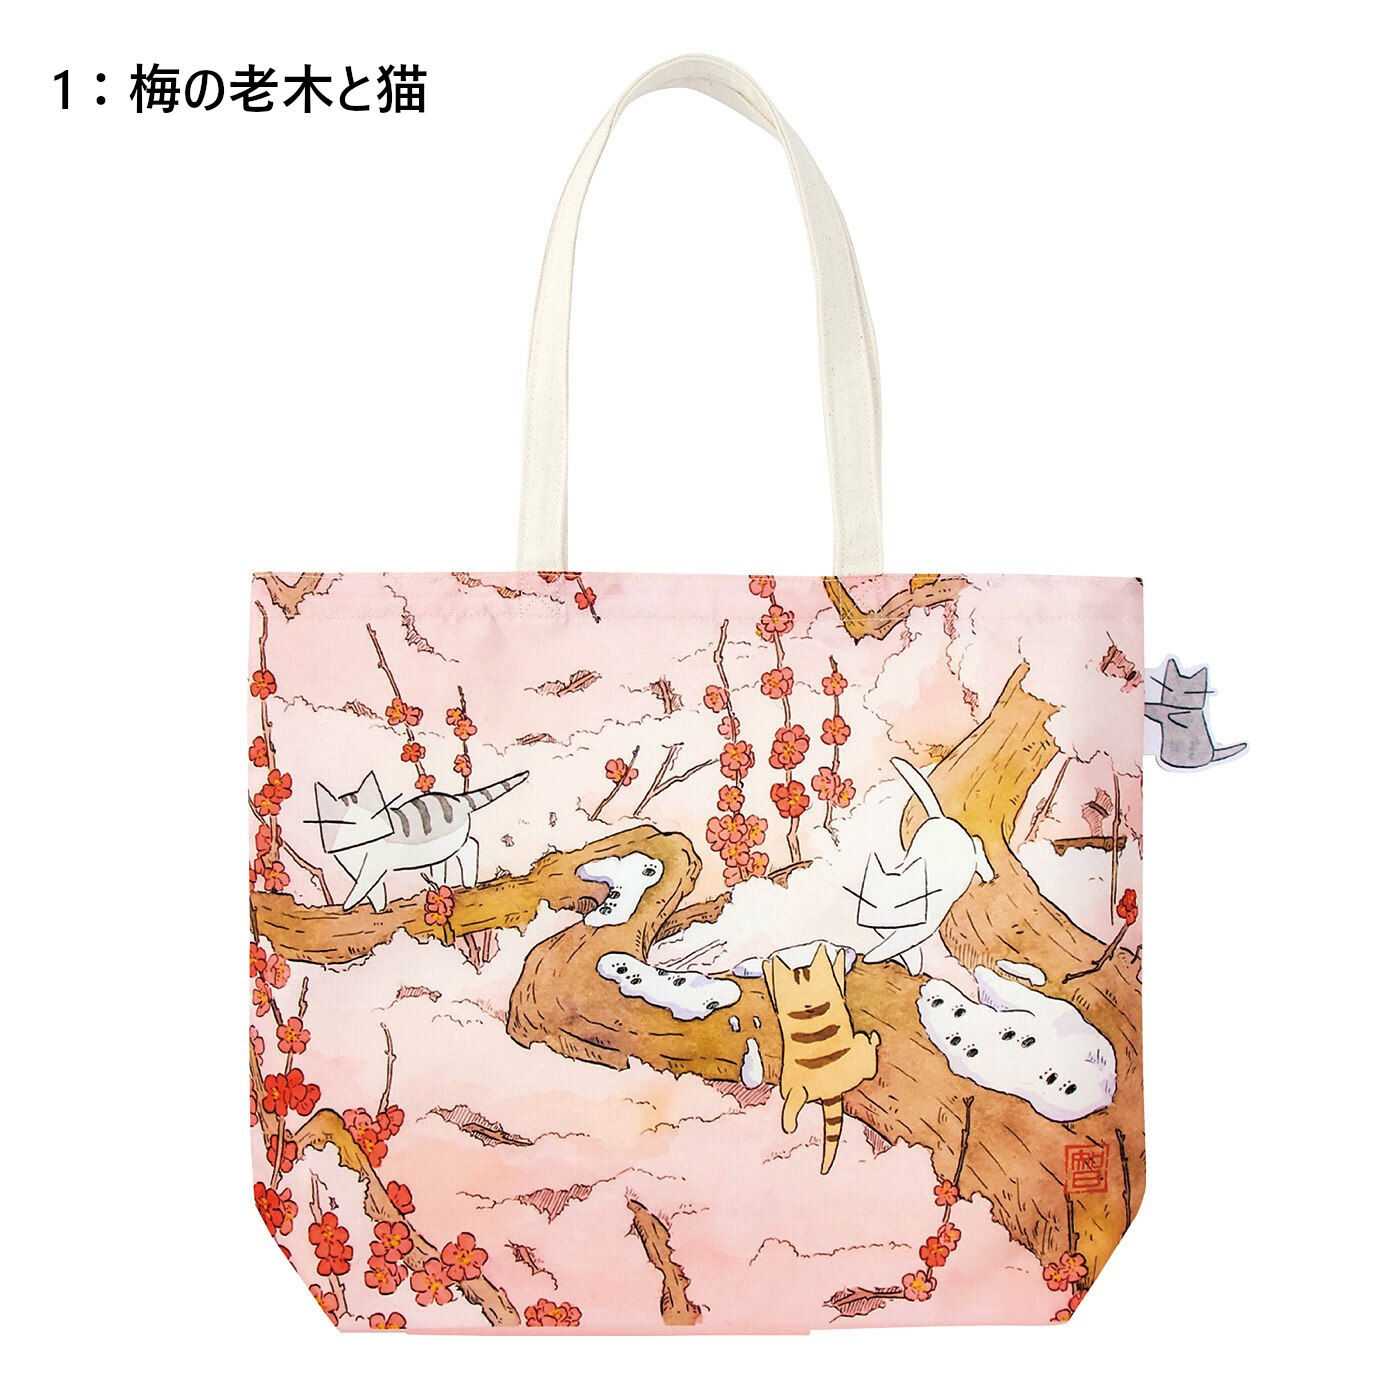 Real Stock|日本画家 久保智昭さんとつくった　猫とお花の季節のトートバッグ|〈梅の老木と猫〉サイドにあしらった猫のタグがワンポイント。いつでもなでなでできます。